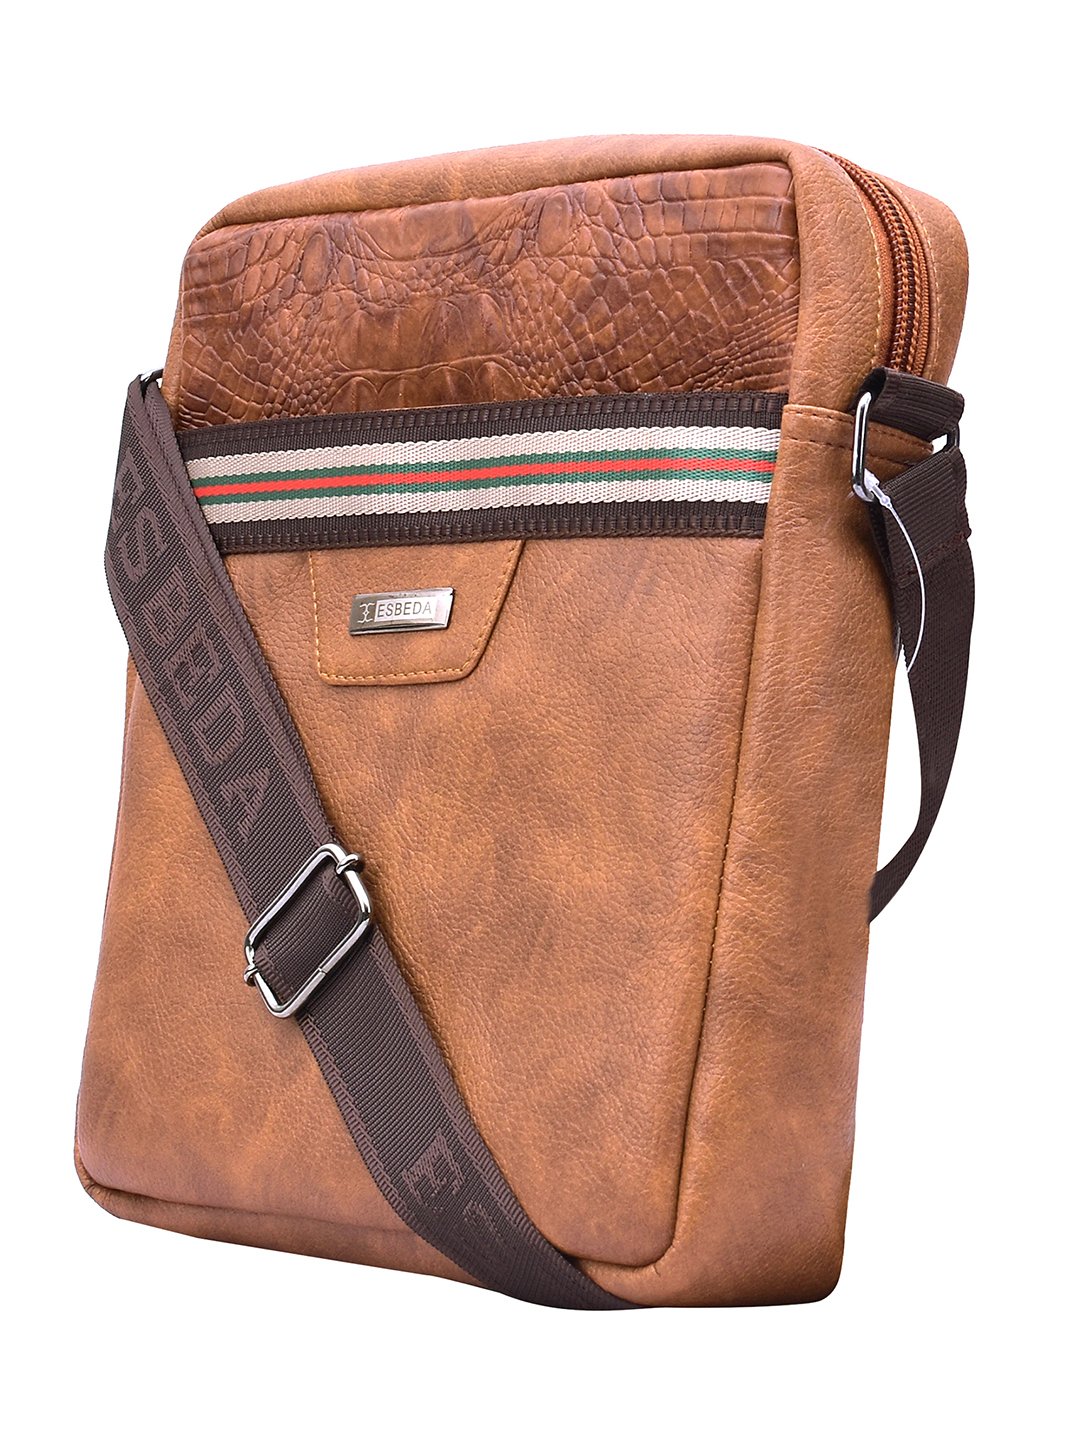 Esbeda Beige Color Small Size Solid U-Shaped Saddle Sling Bag For Women -  ESBEDA - 3190518